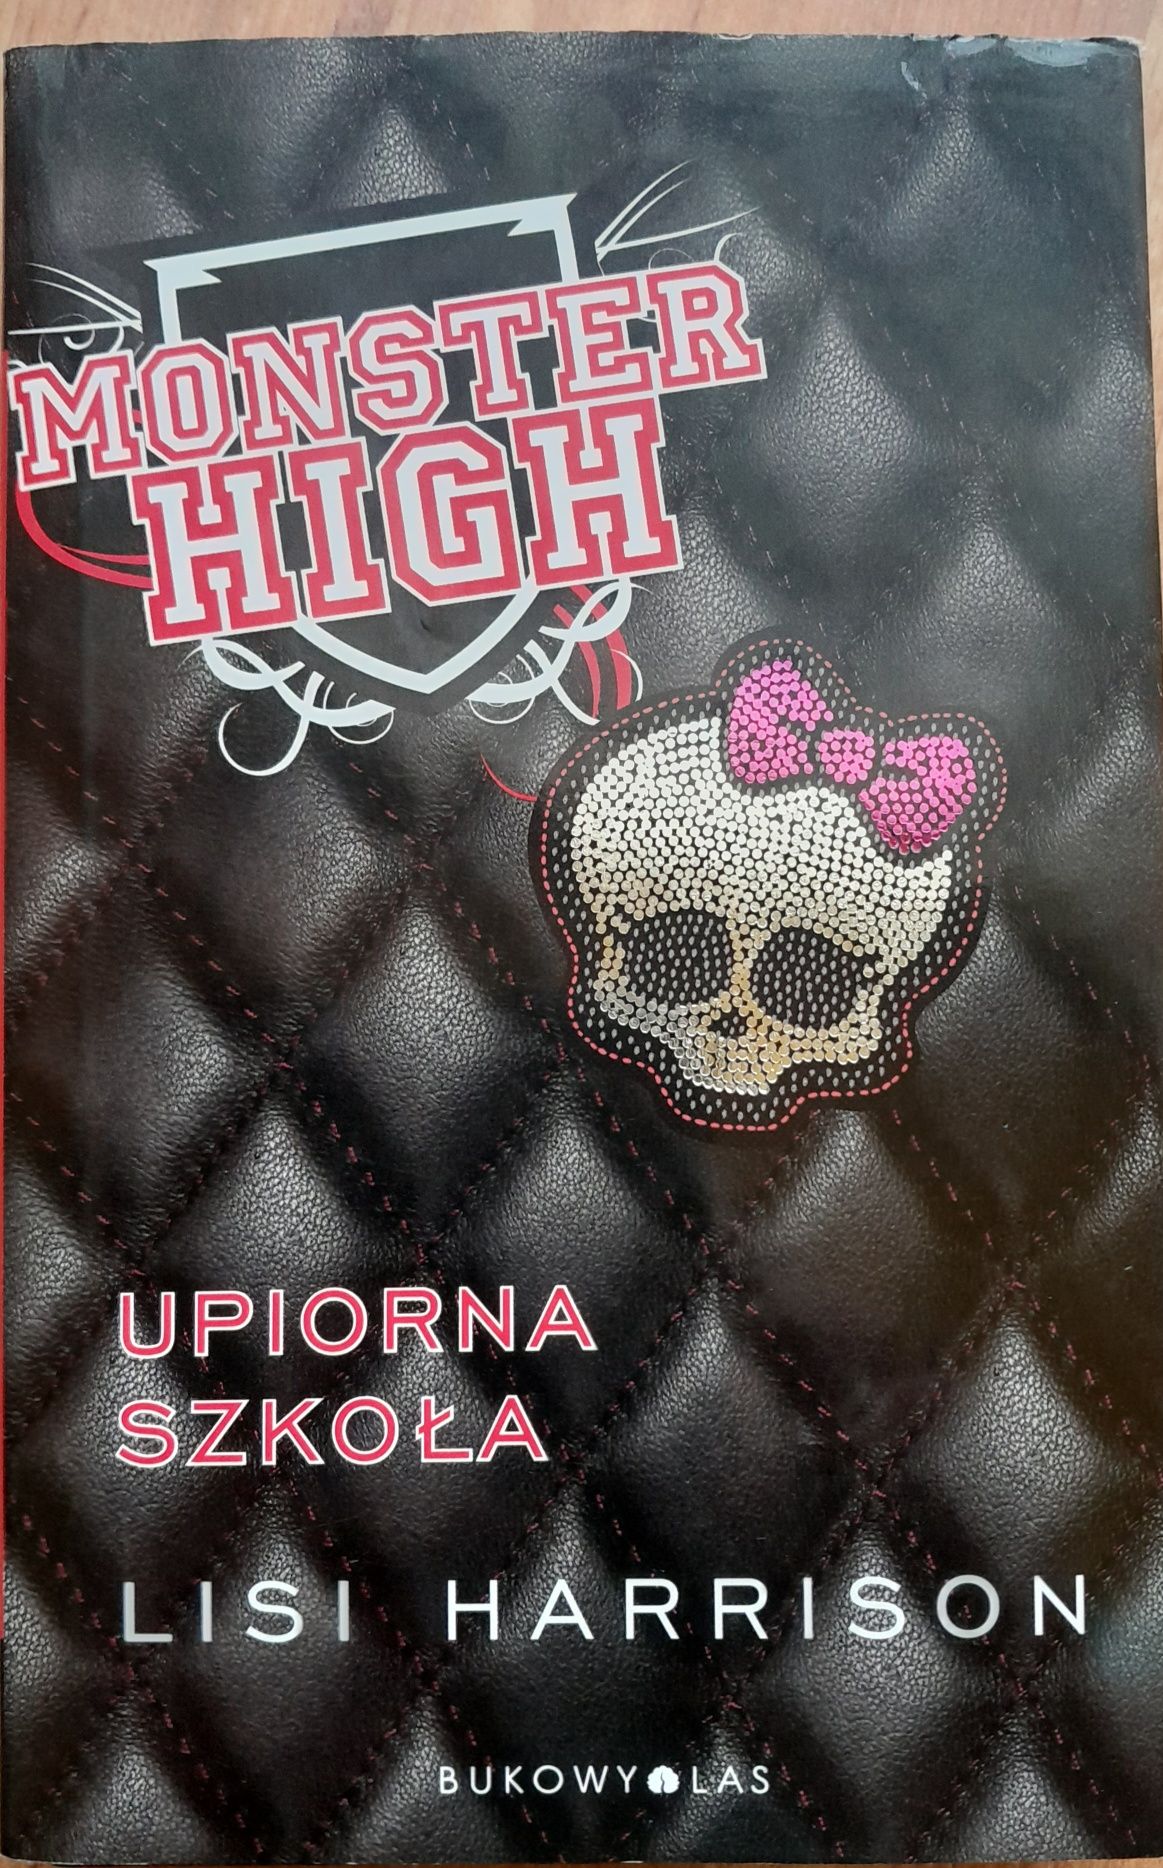 Monster High Upiorna szkoła